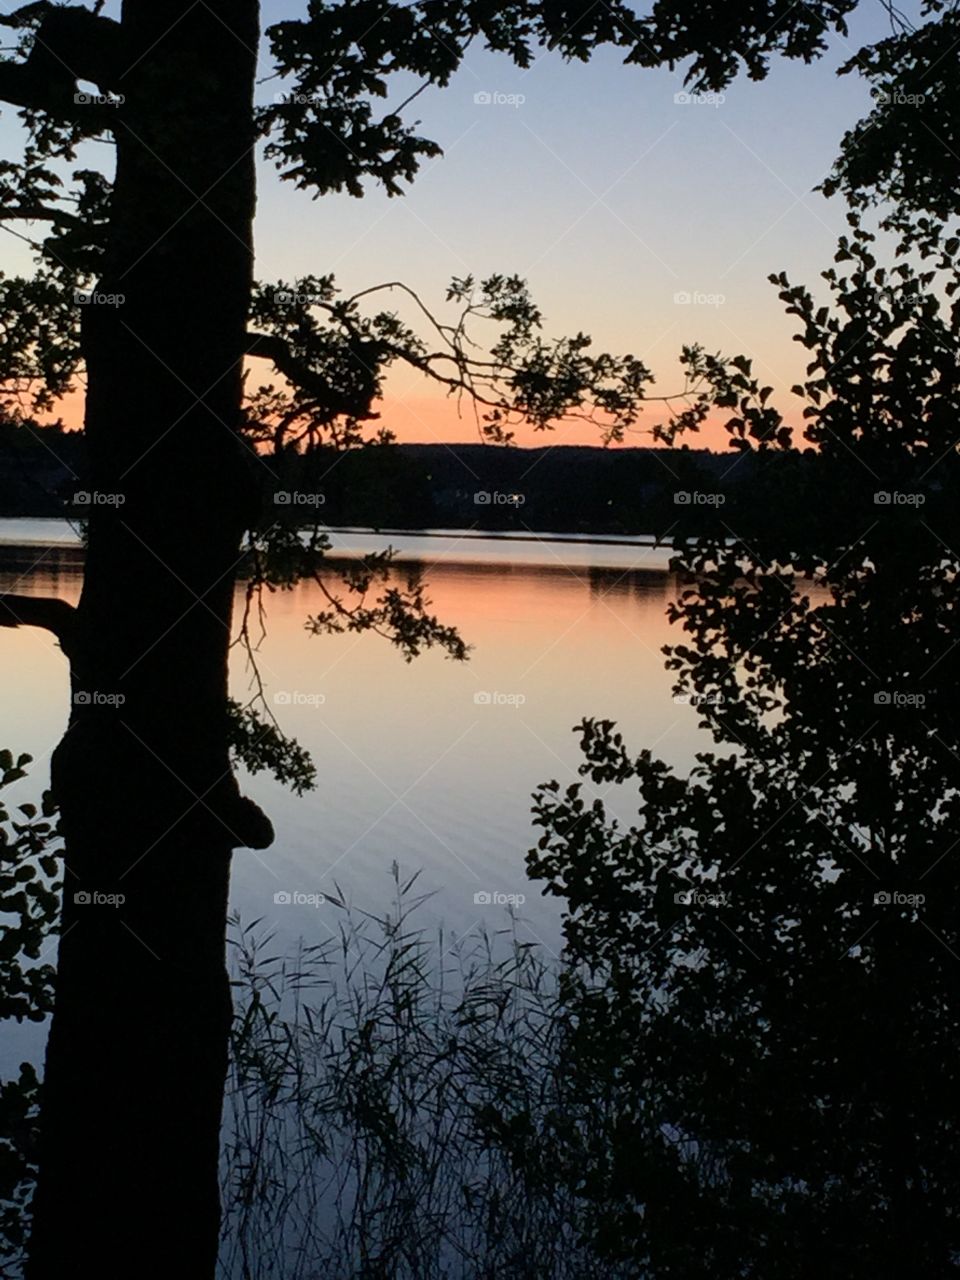 Solnedgång vid sjö. Sunset in Alingsås, Sweden
Solnedgång över Gerdsken Alongsås, Sverige
Underbar kvällspromenad